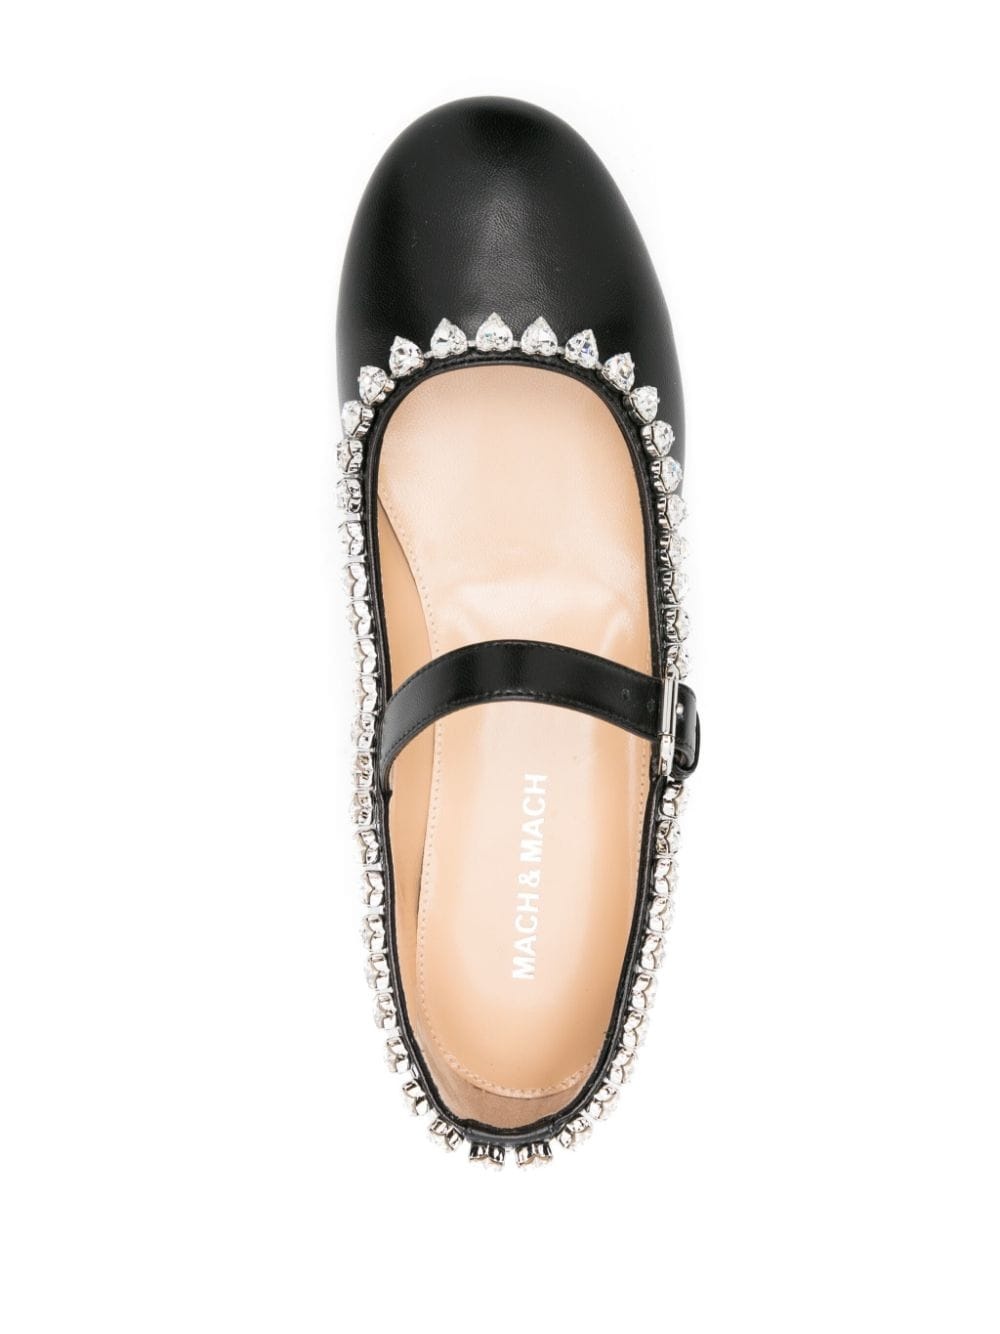 Audrey crystal-embellished ballerina shoes - 4